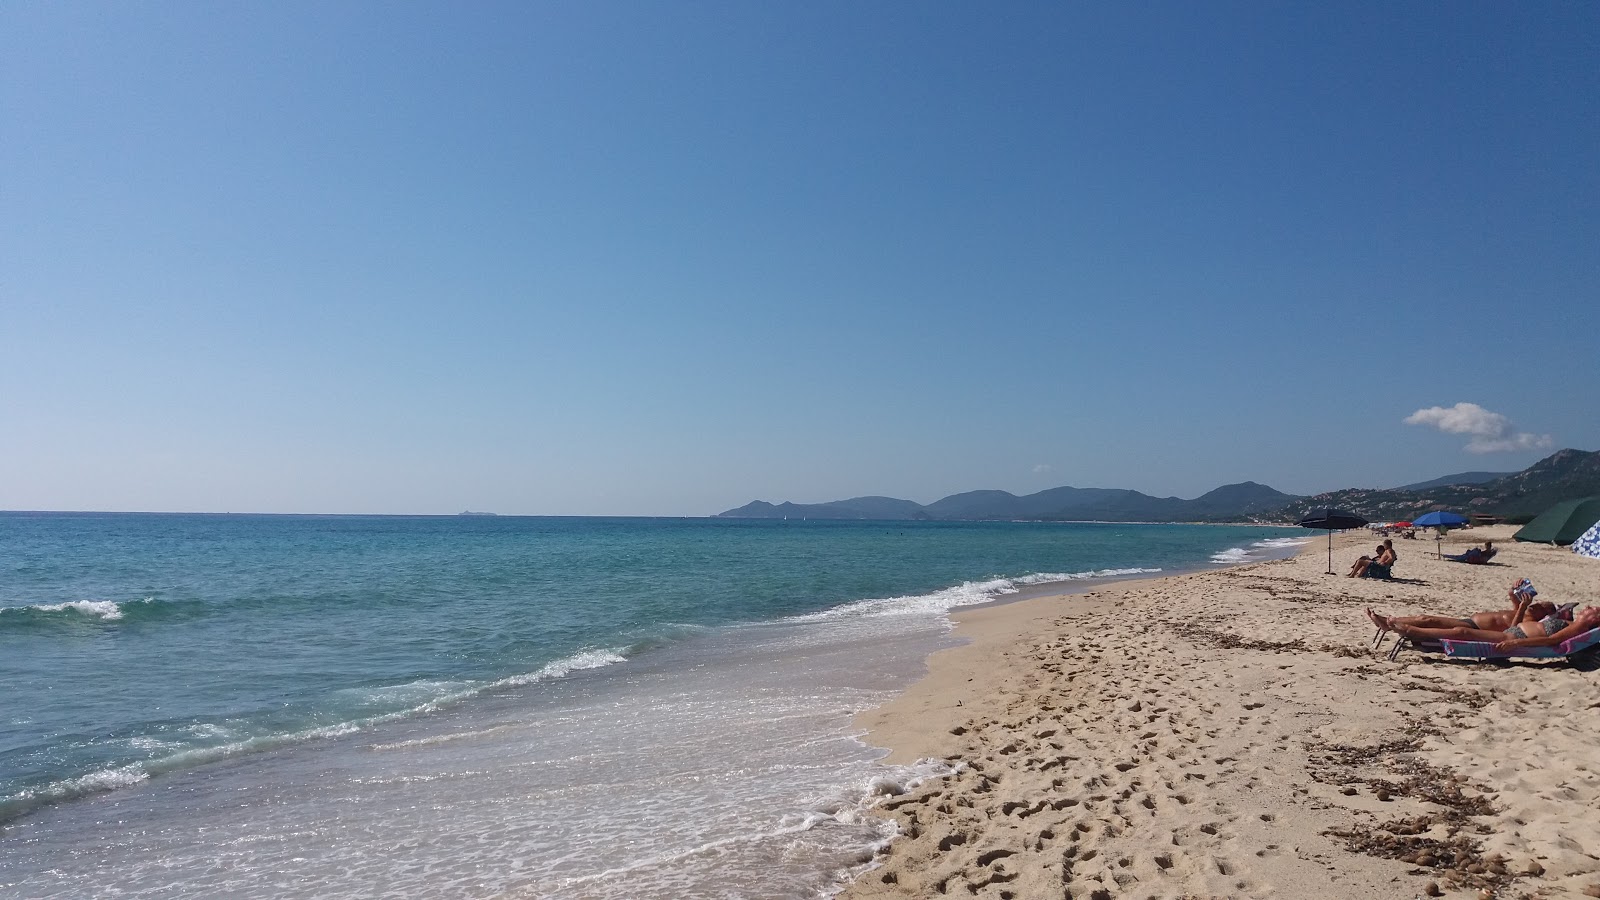 Foto de Spiaggia Rei Sole - lugar popular entre los conocedores del relax